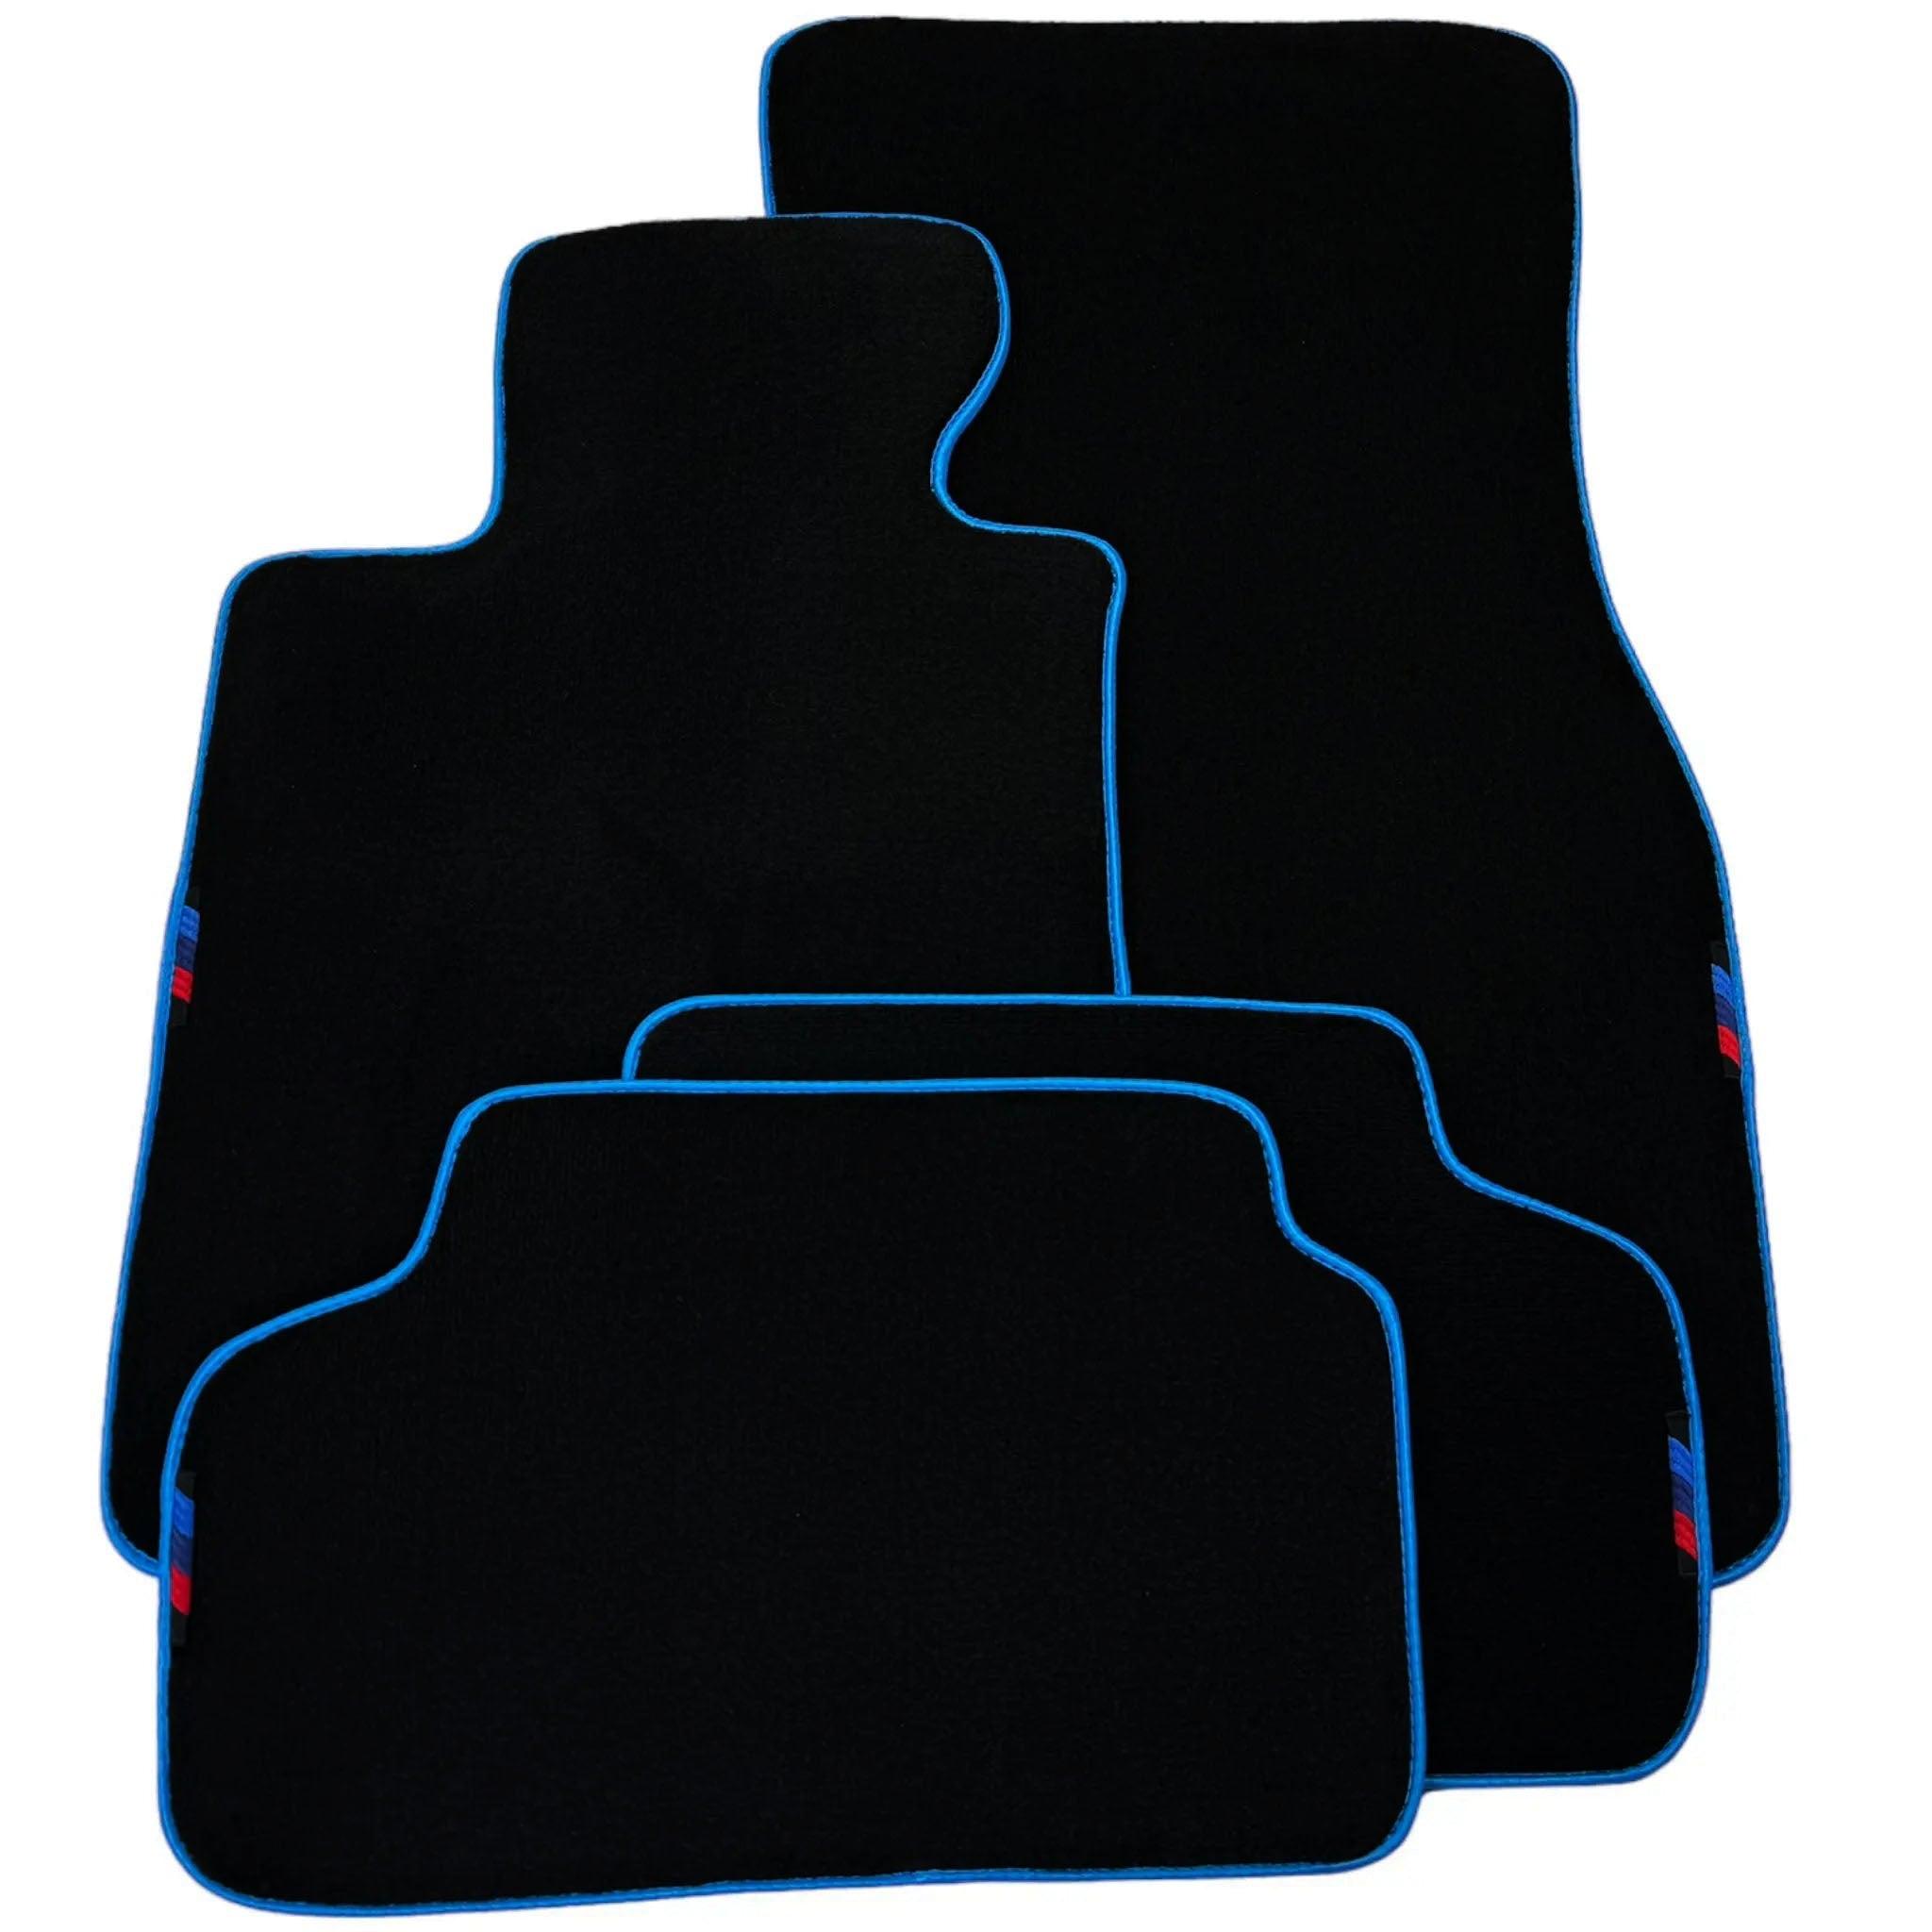 Black Floor Mats For BMW 6 Series F13 2-door Coupe | Sky Blue Trim